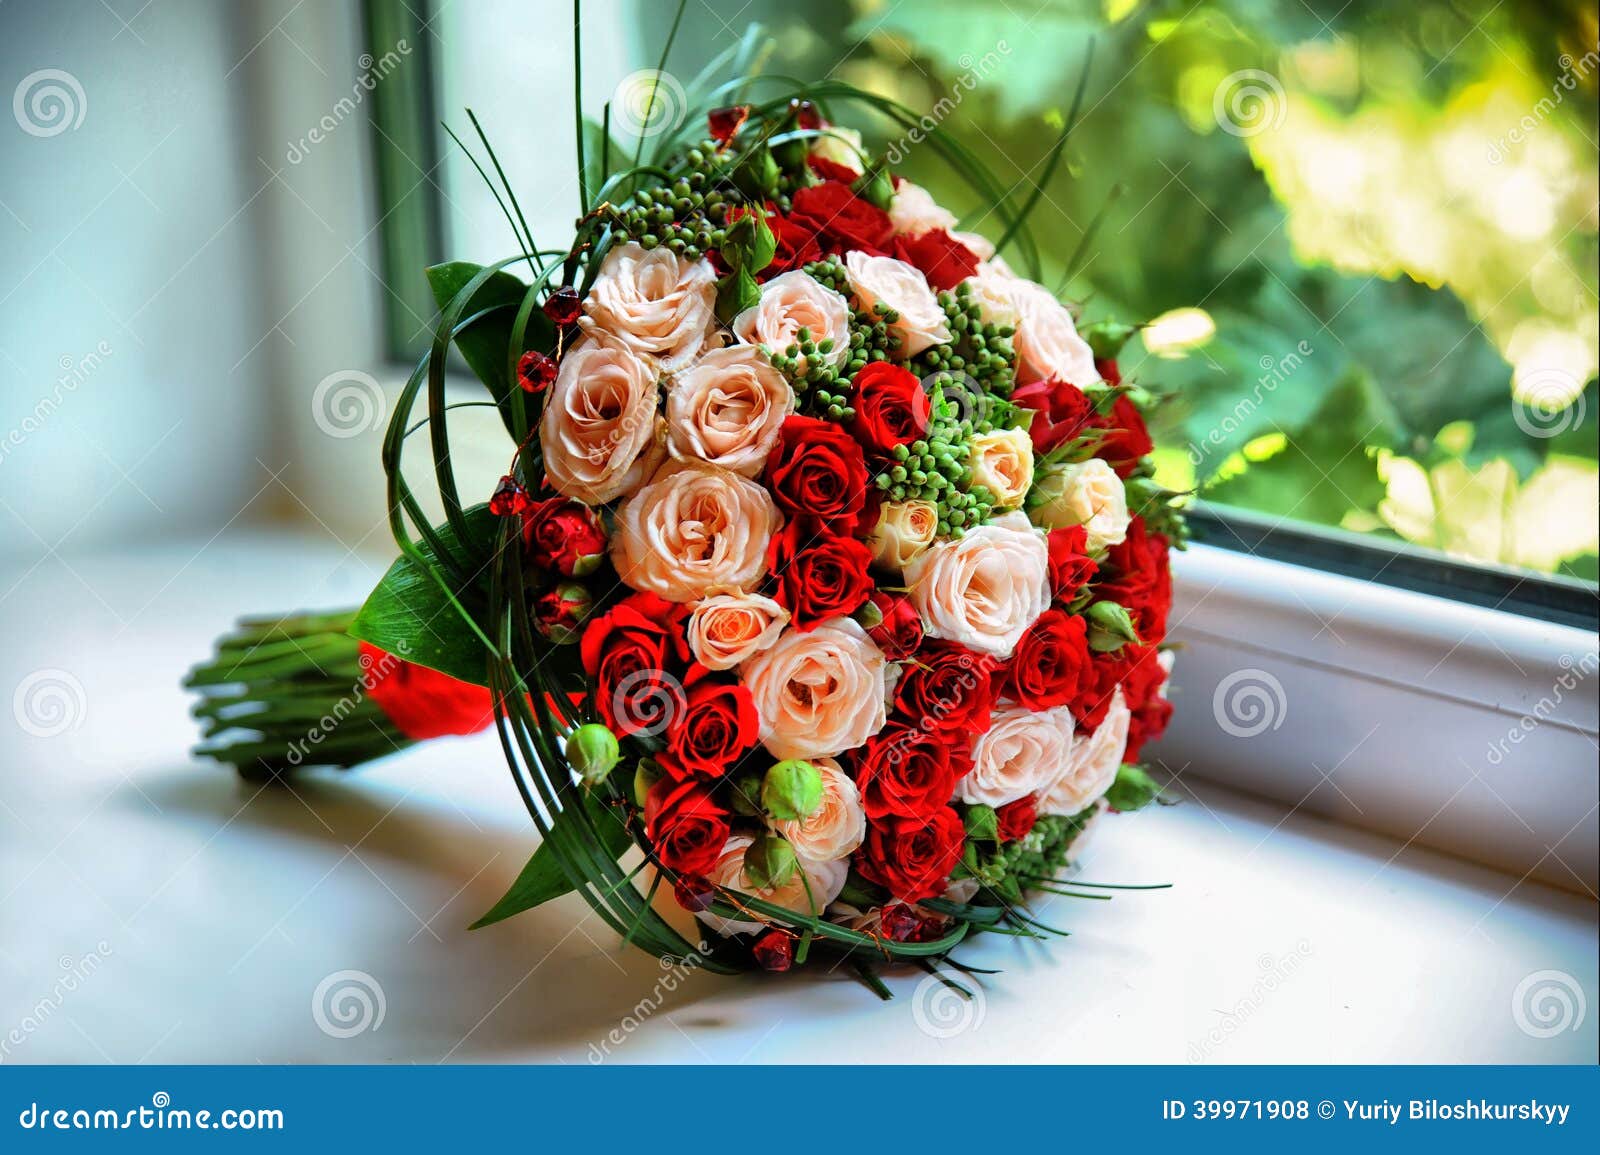 Bridal bouquet stock photo. Image of bouquet, flowers - 39971908